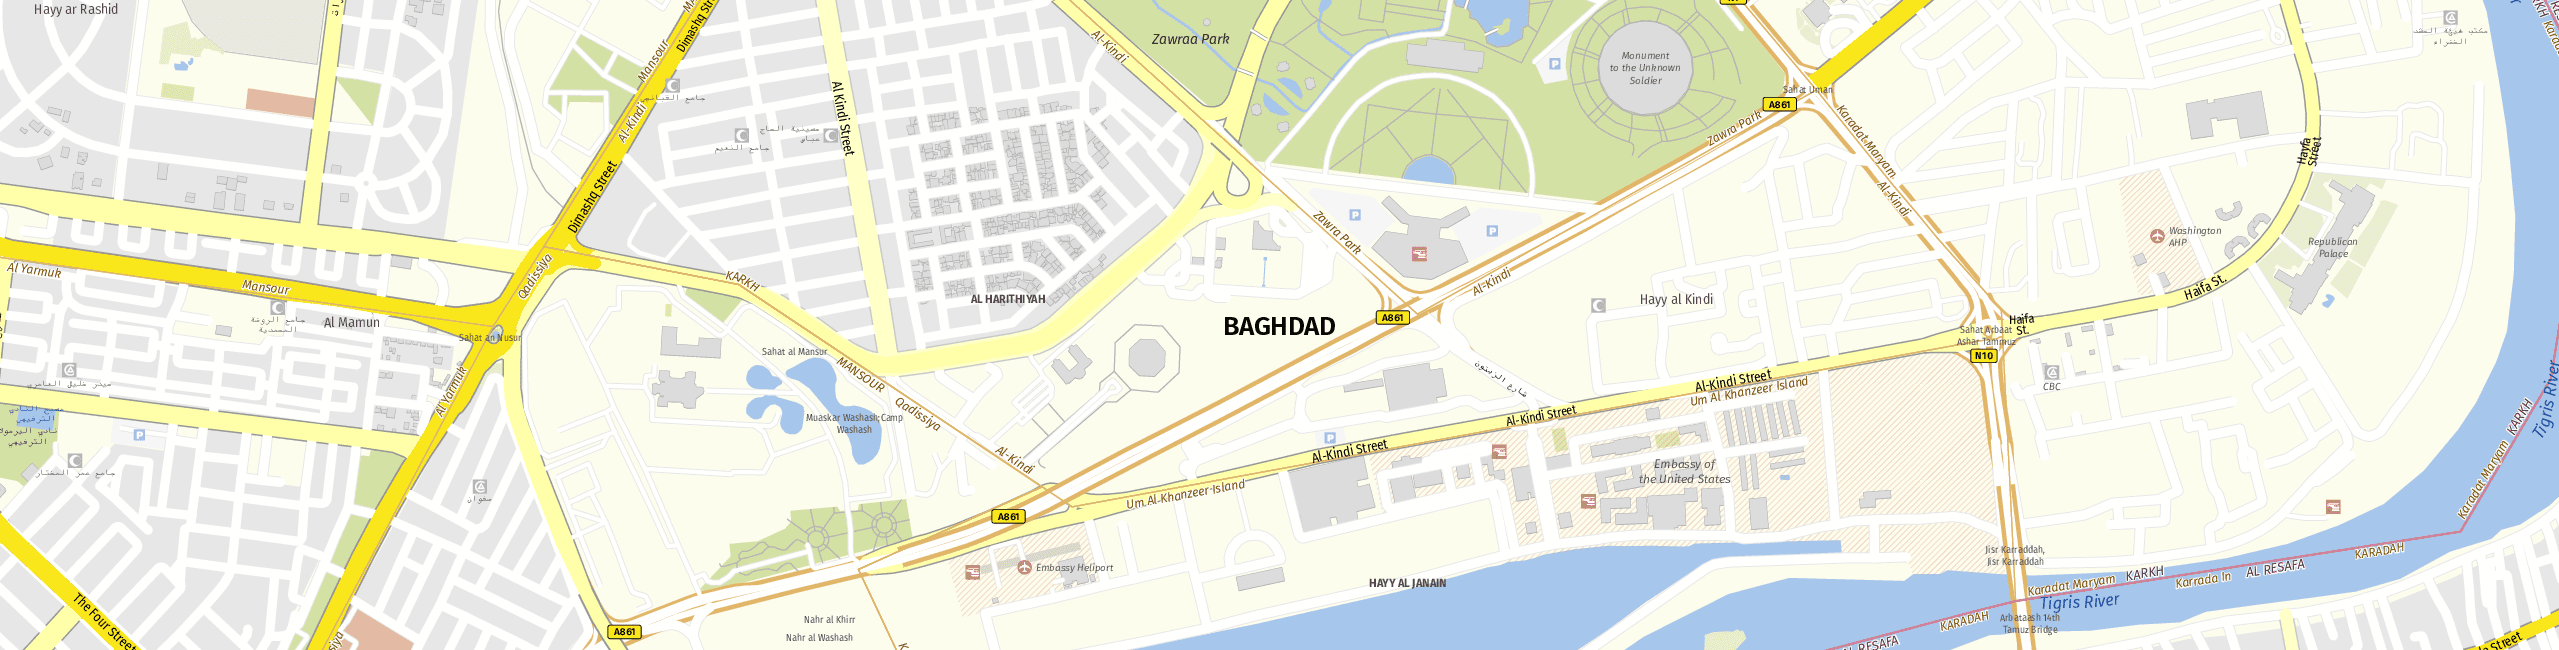 Stadtplan Baghdad zum Downloaden.